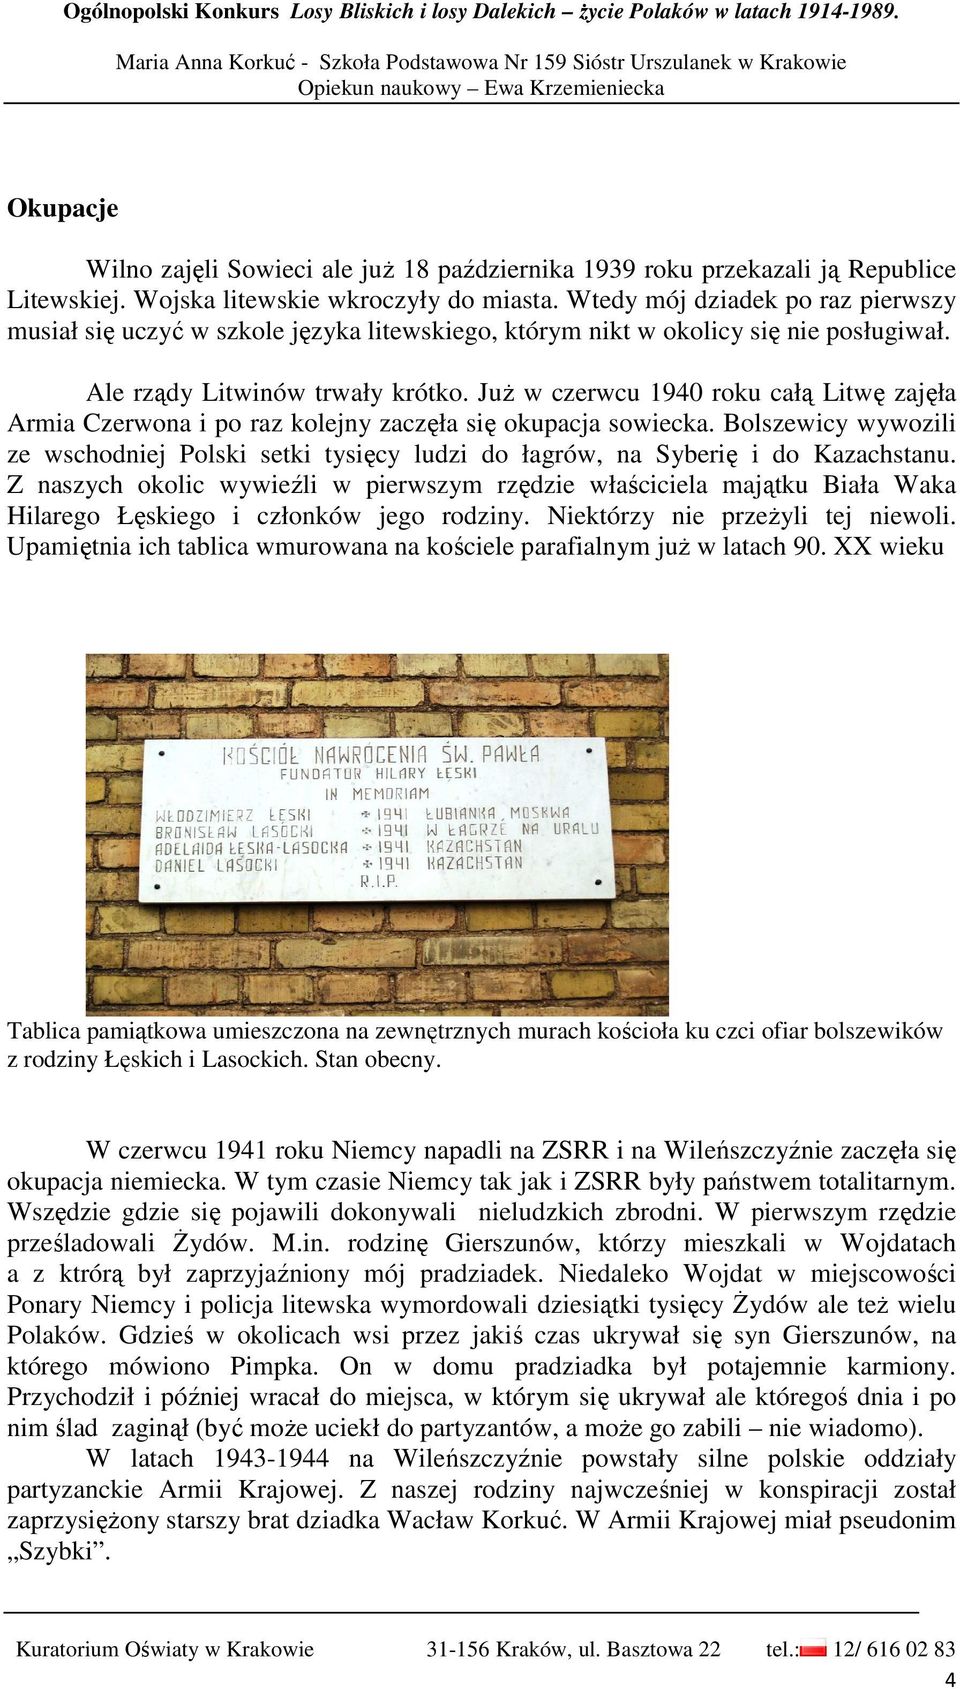 JuŜ w czerwcu 1940 roku całą Litwę zajęła Armia Czerwona i po raz kolejny zaczęła się okupacja sowiecka.